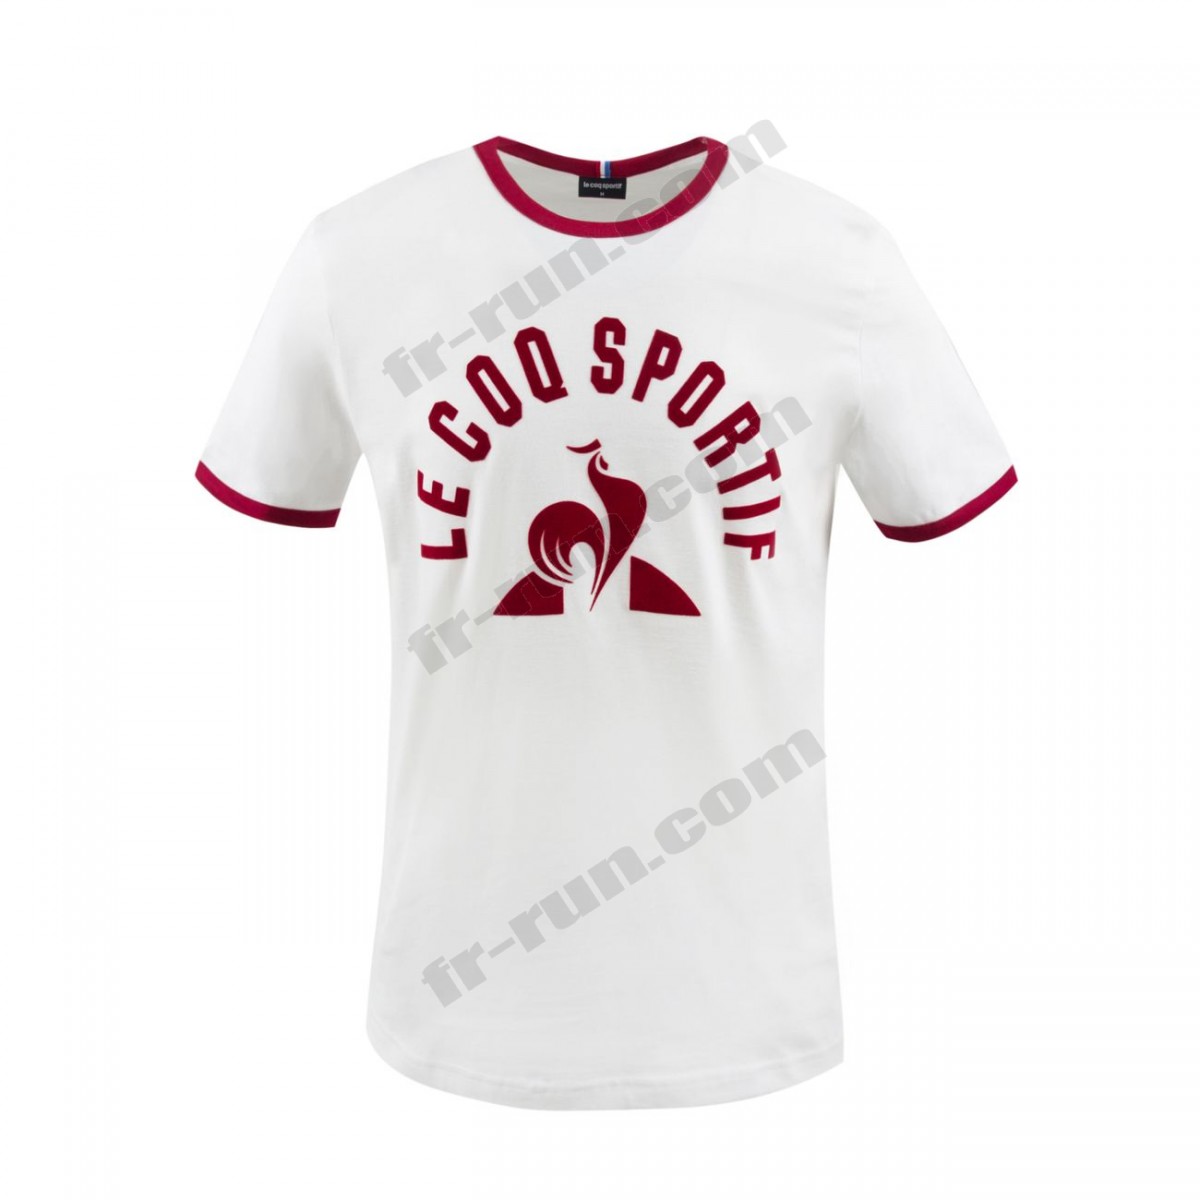 Le Coq Sportif/running homme LE COQ SPORTIF T-shirt ESSENTIELS Homme √ Nouveau style √ Soldes - -0